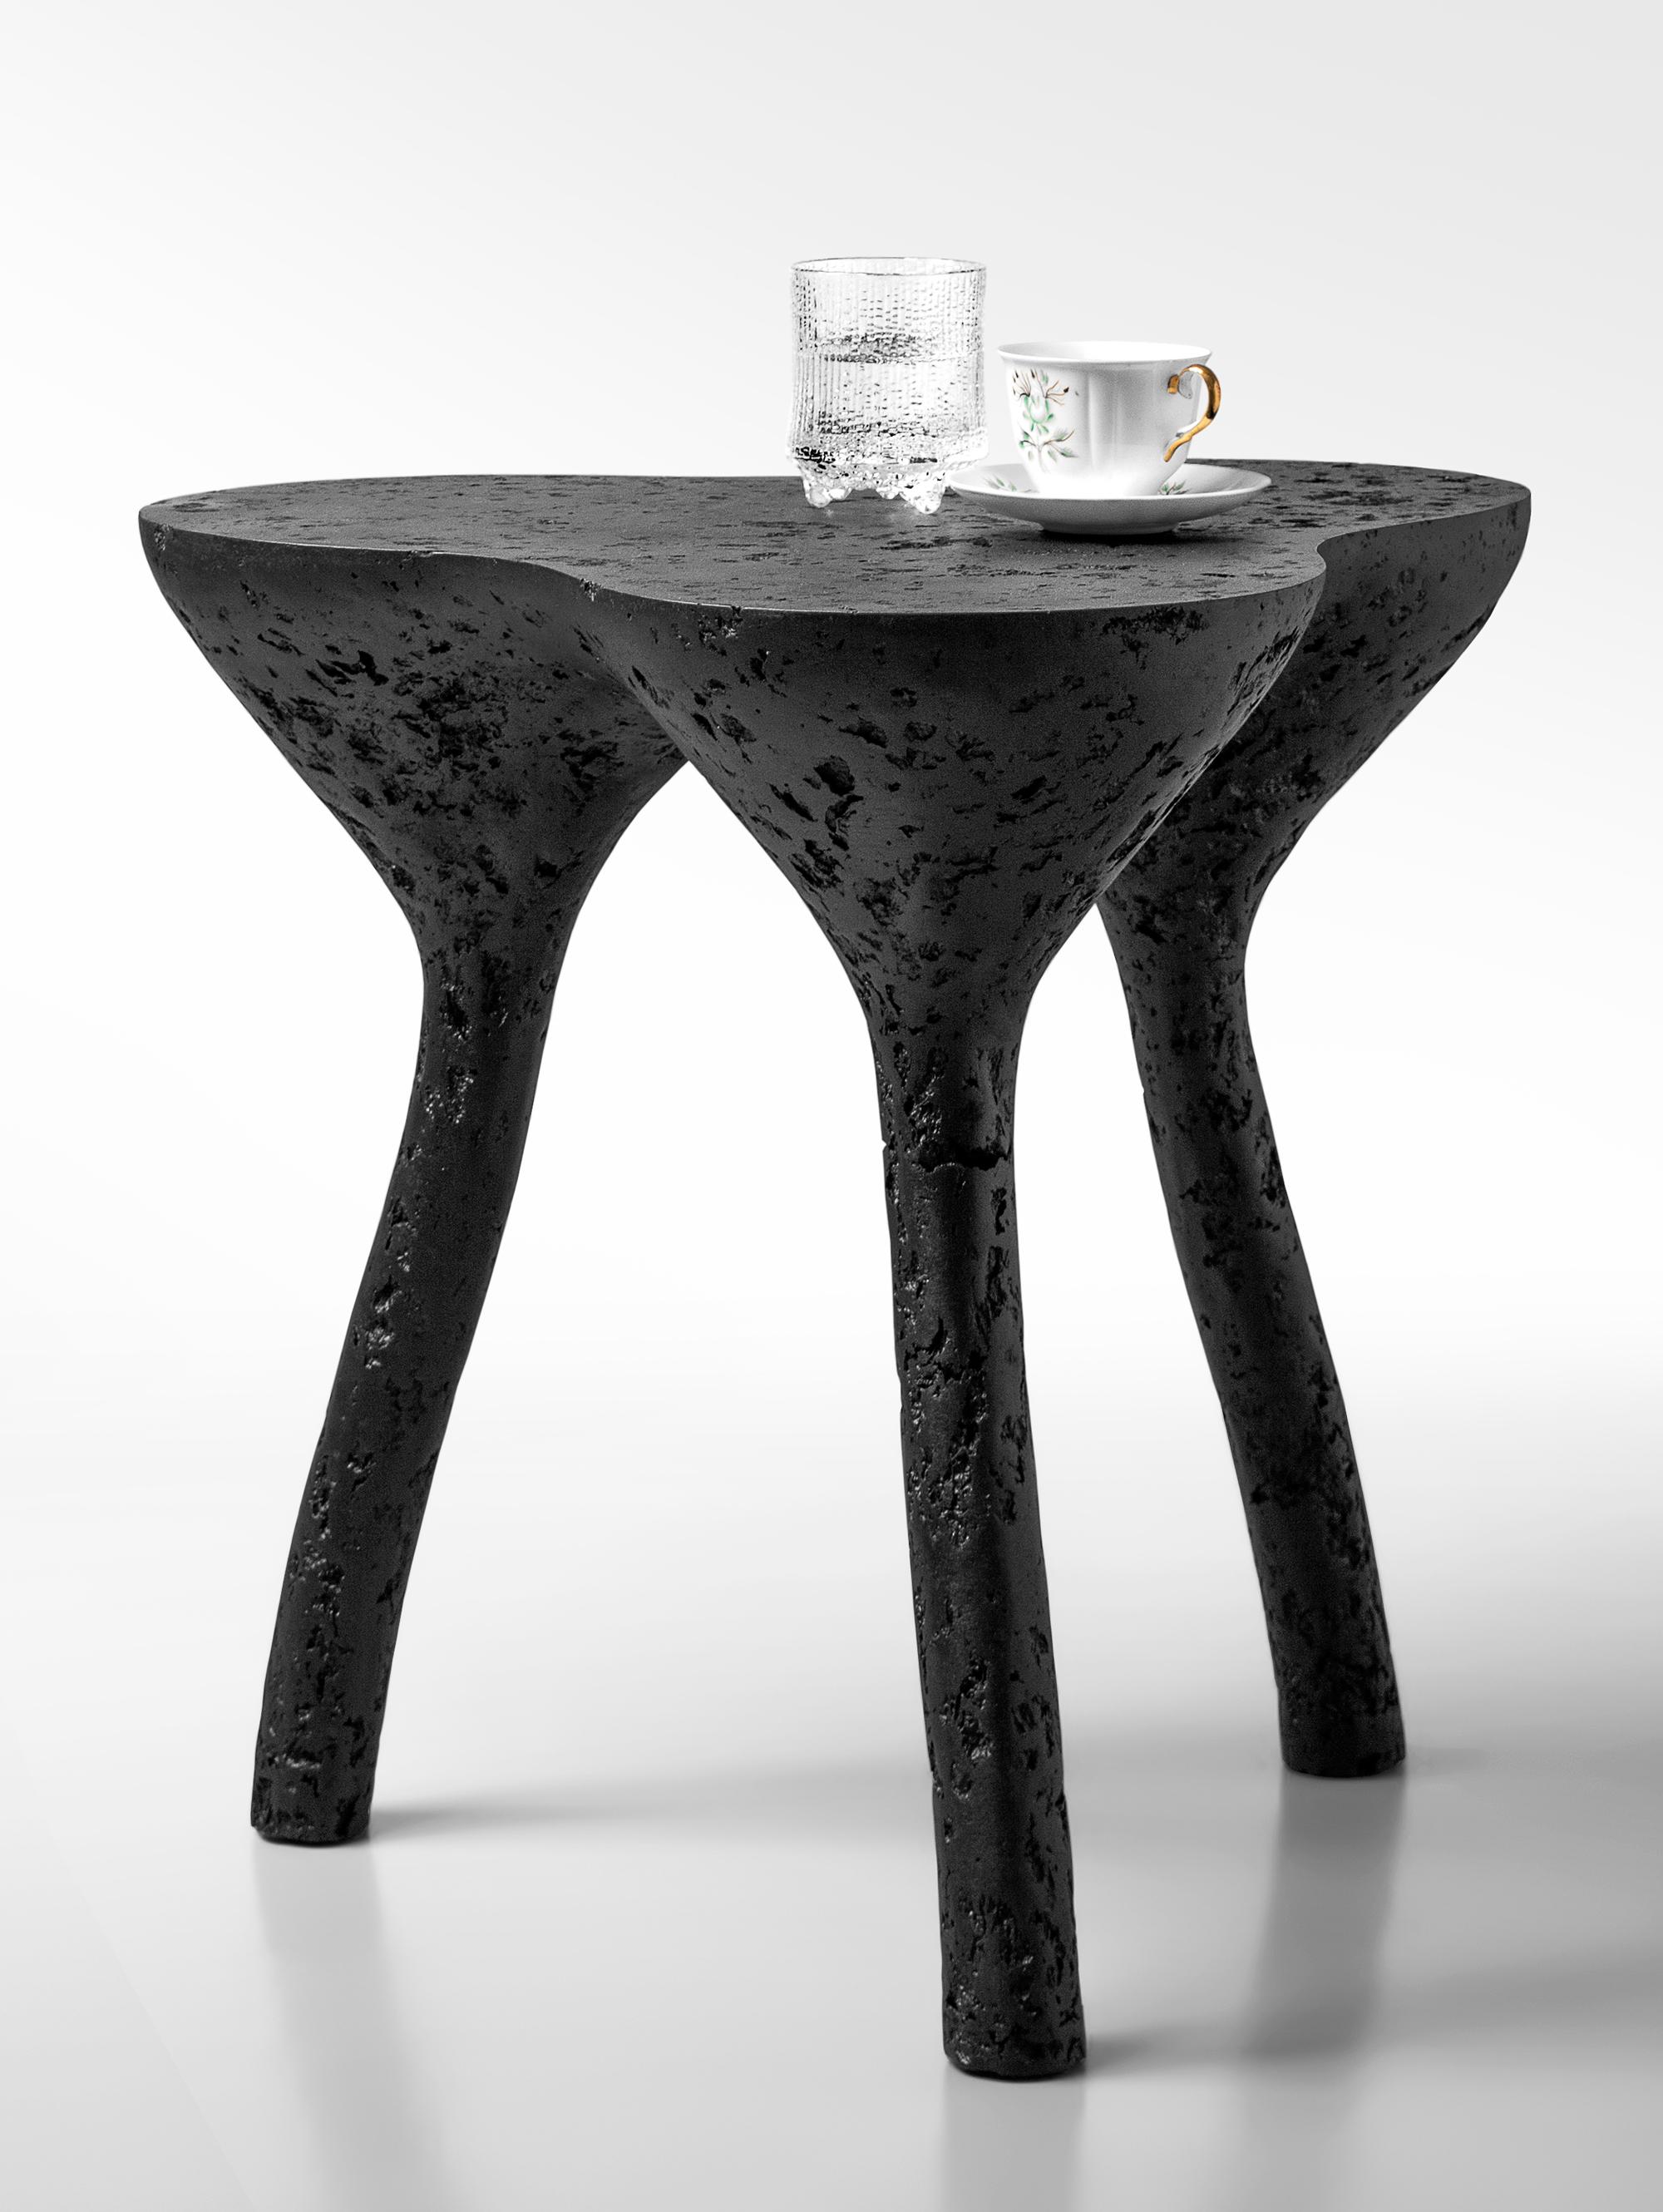 Table basse tripode par Kasanai
Dimensions : D 50 x H 52 cm.
MATERIAL : Béton, bois, papier recyclé, colle, peinture
6 kg.

La fusion de la robustesse et de l'élégance, ainsi que le mélange de l'archaïsme et de la modernité. Plus qu'une simple